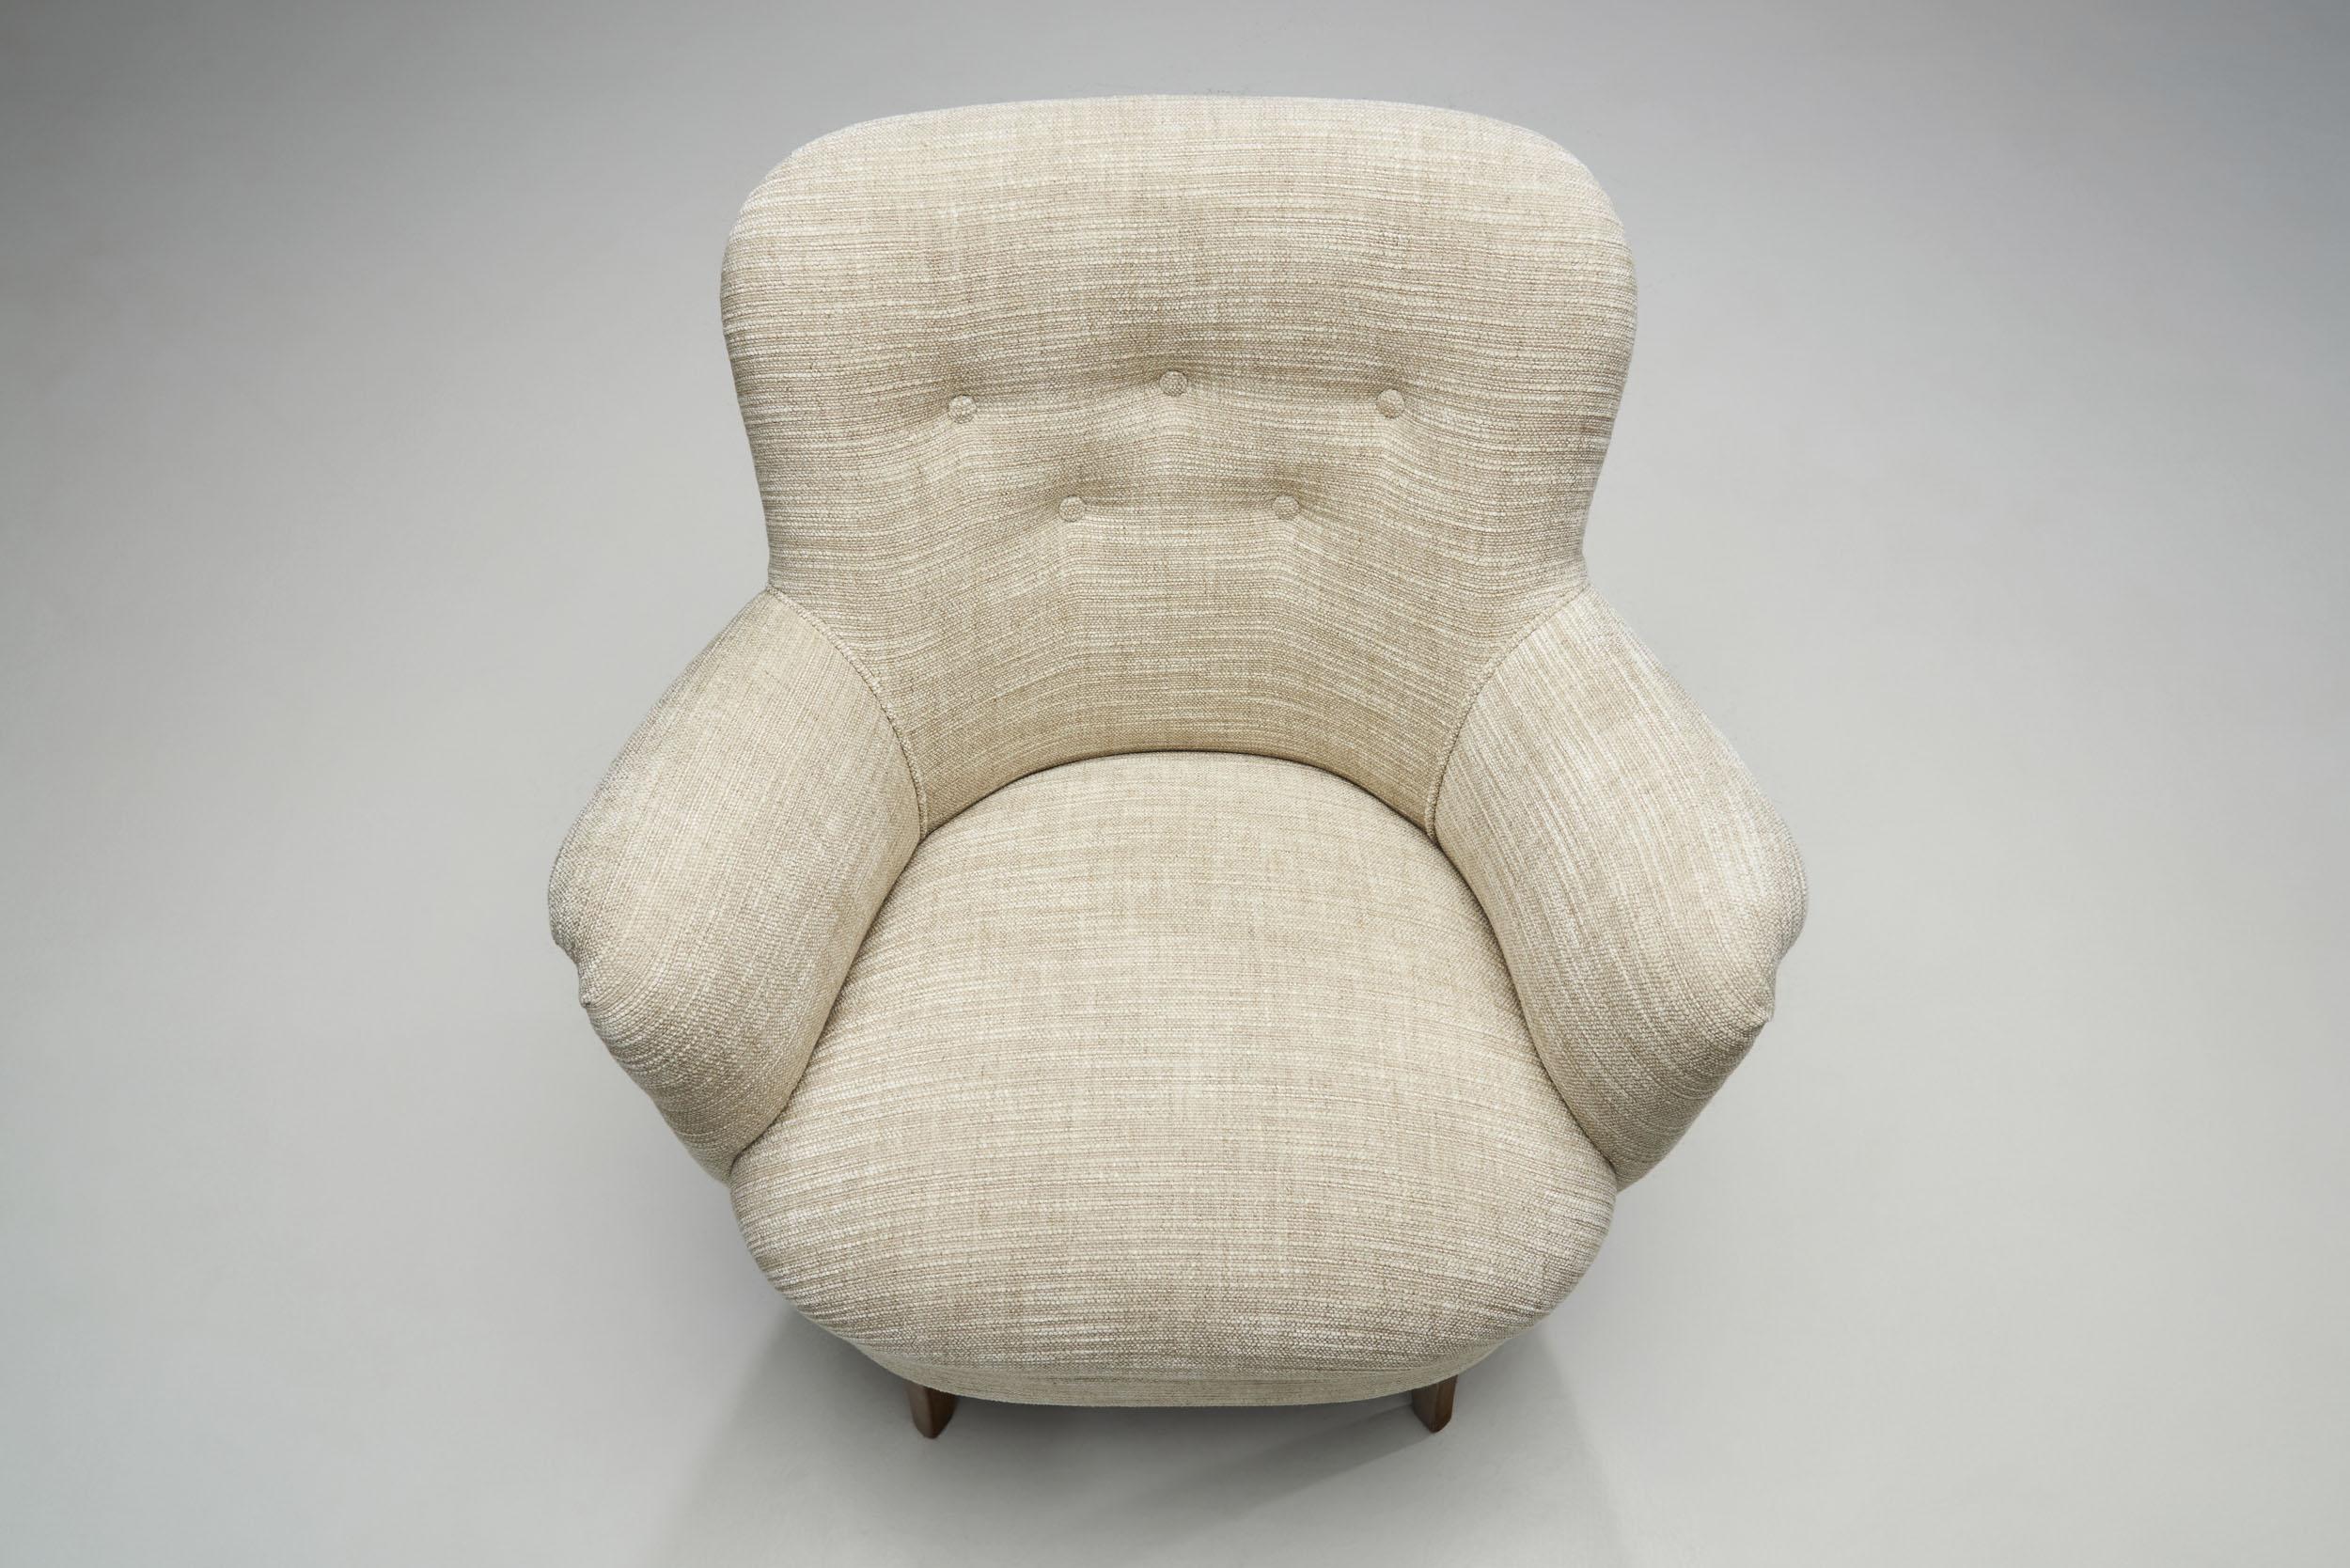 Carl Malmsten Upholstered Armchairs for O.H. Sjögren, Sweden, 1960s For Sale 3